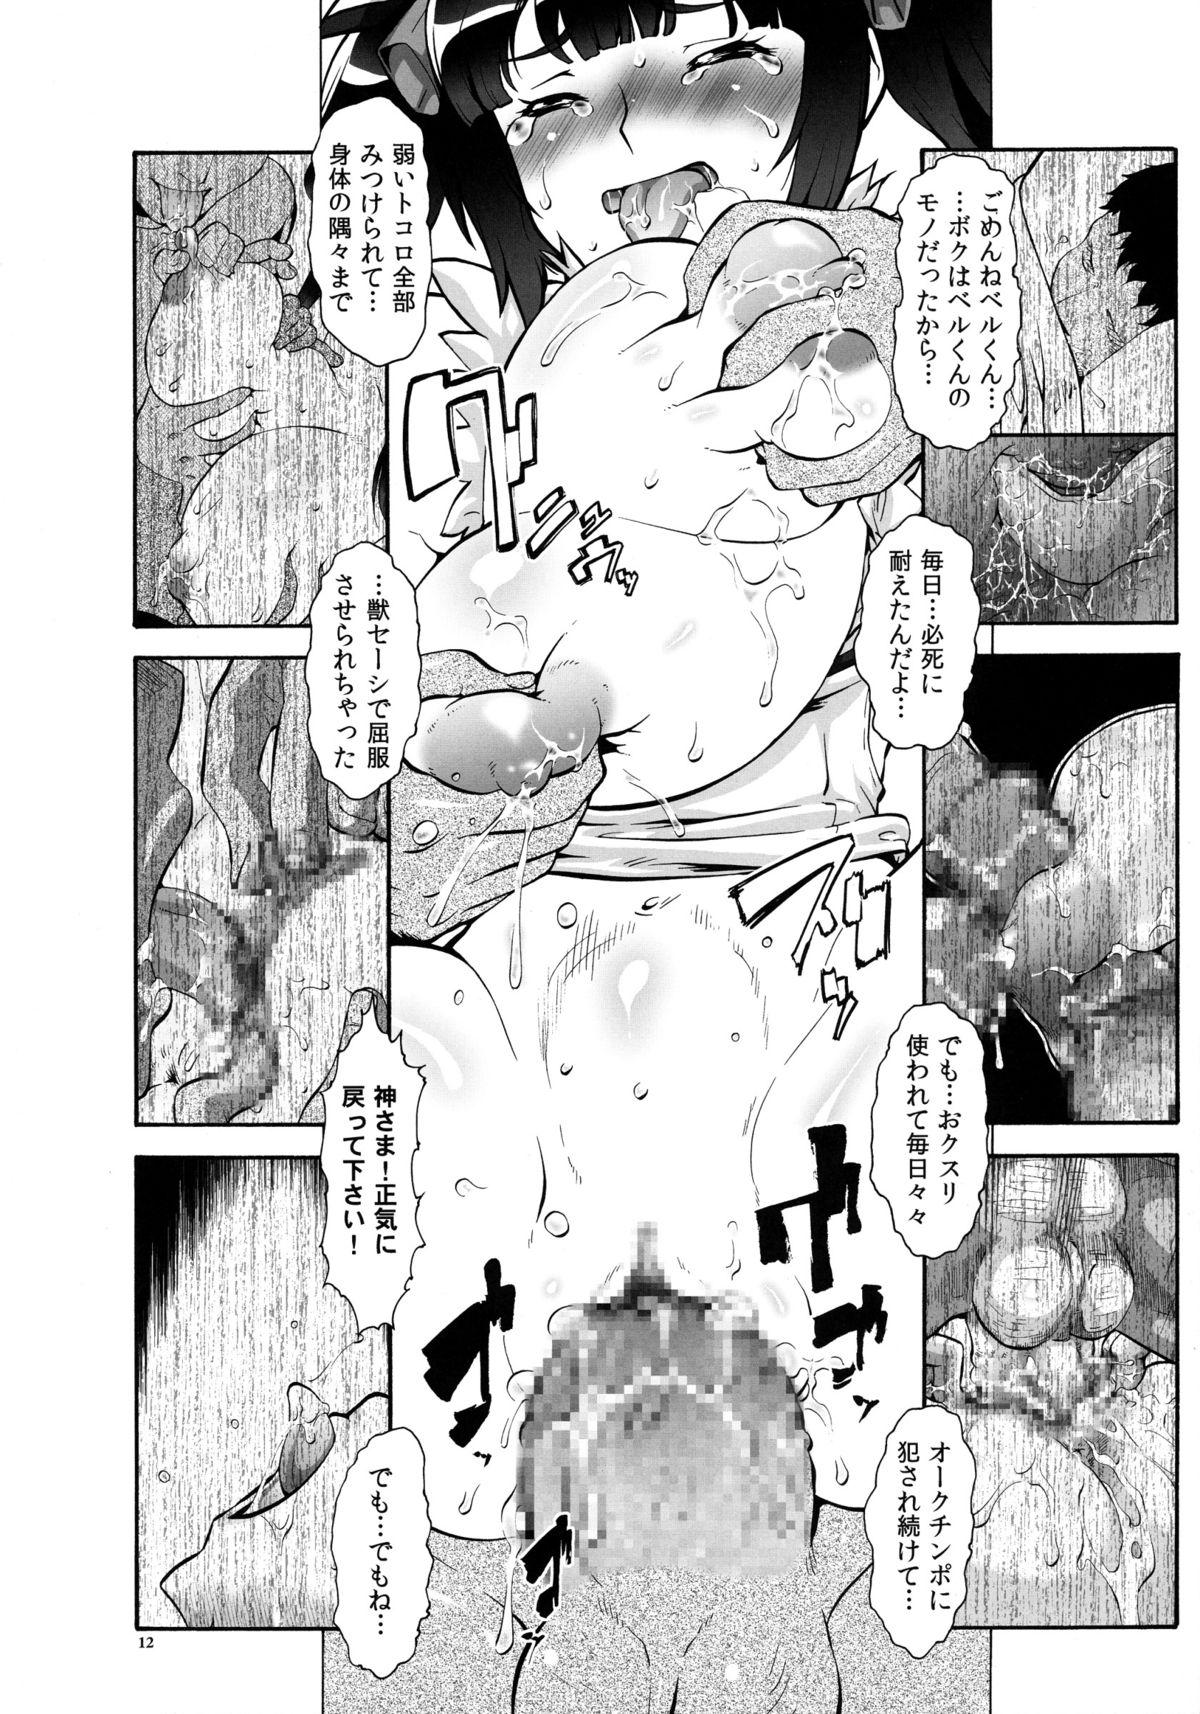 Suckingcock Danmachi - Dungeon ni deai o motomeru no wa machigatteiru darou ka Gay Clinic - Page 12